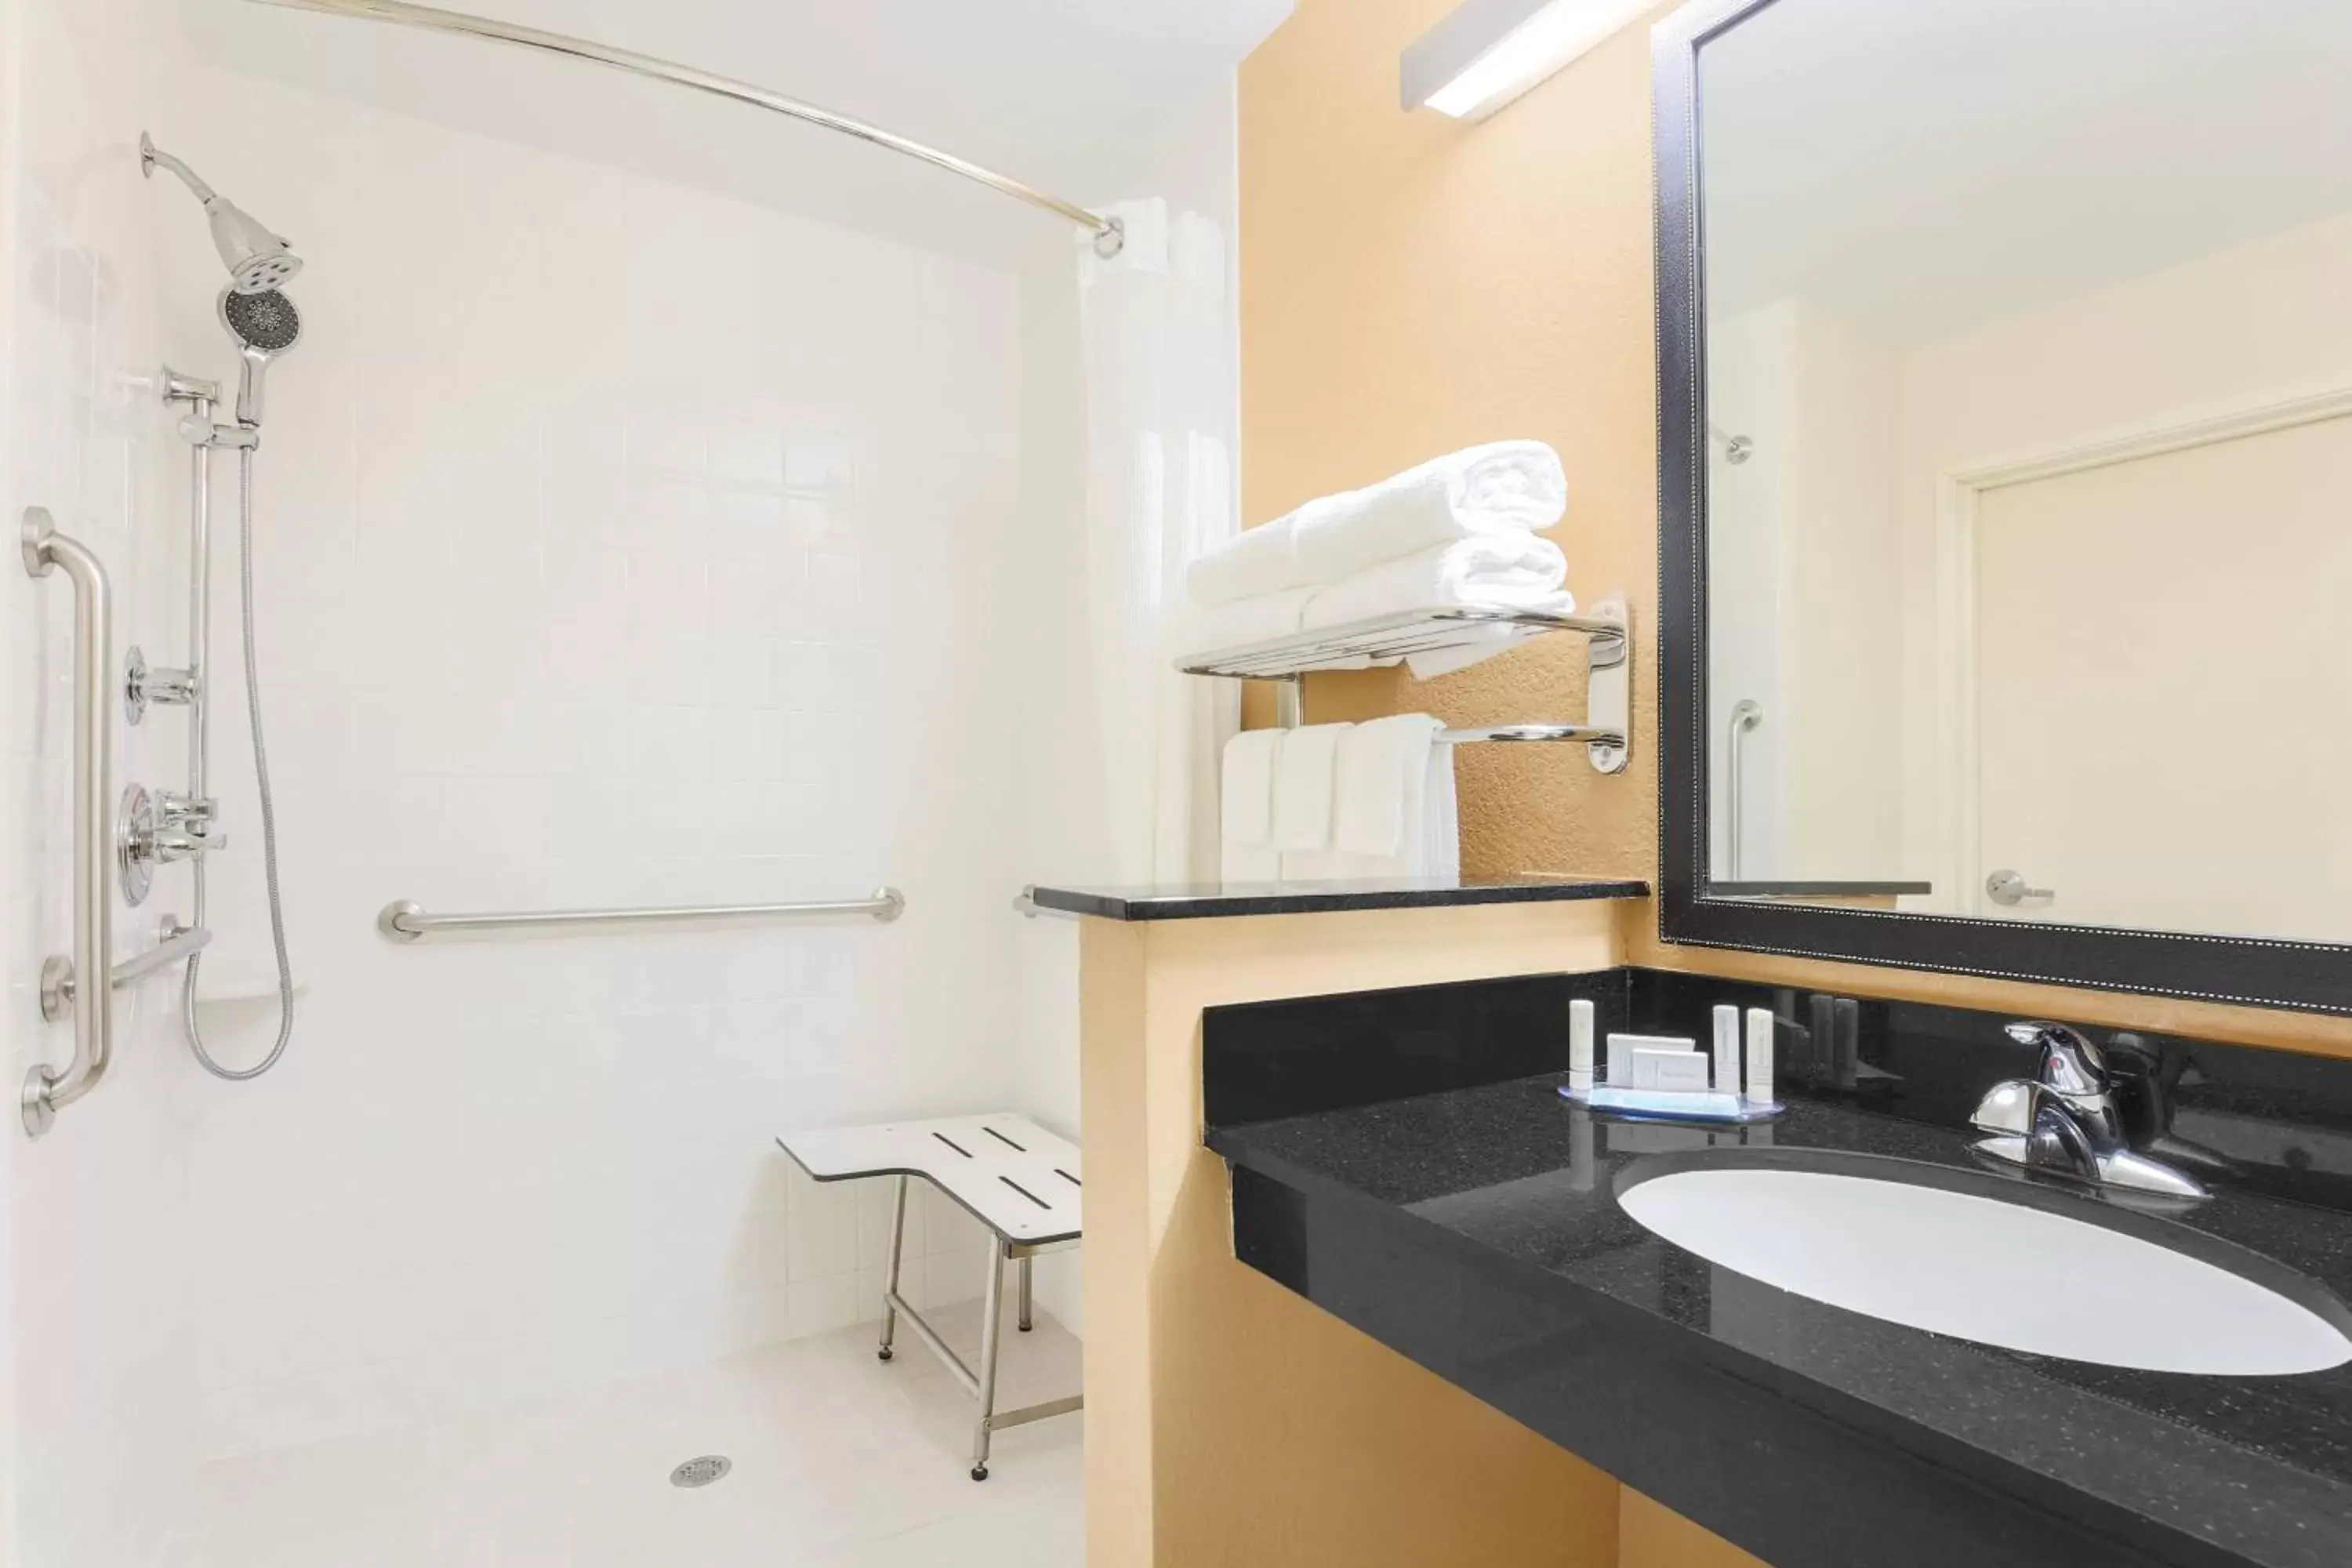 Bathroom in Fairfield Inn & Suites Houston Humble